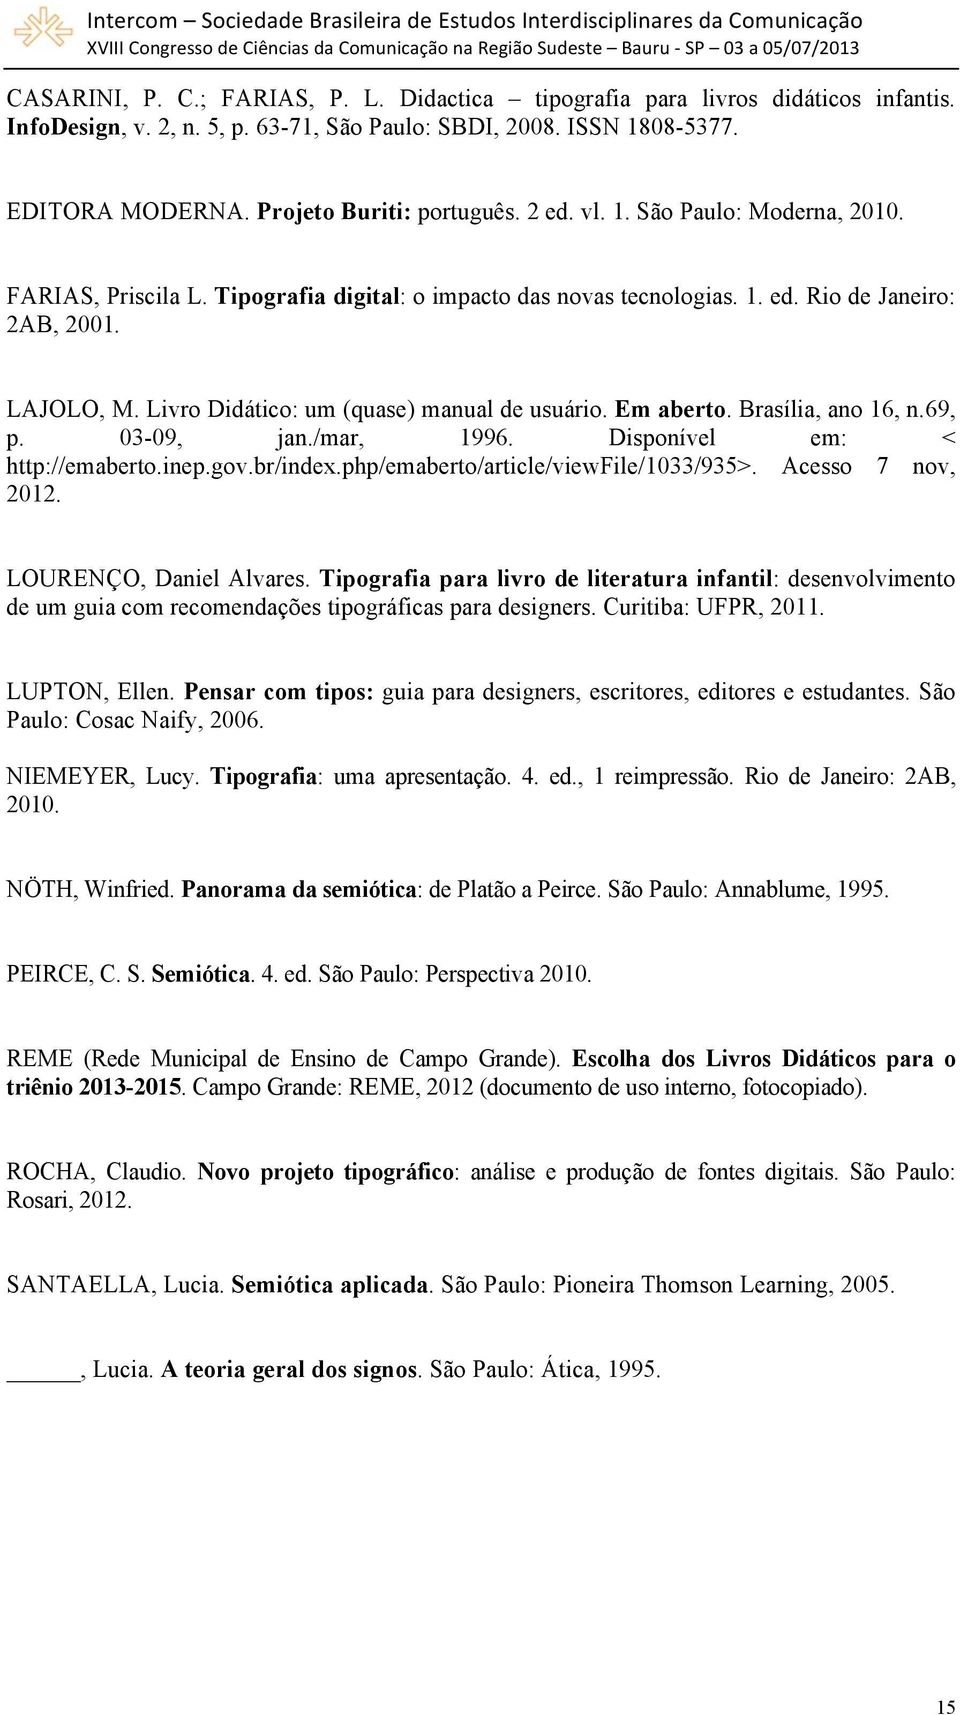 Livro Didático: um (quase) manual de usuário. Em aberto. Brasília, ano 16, n.69, p. 03-09, jan./mar, 1996. Disponível em: < http://emaberto.inep.gov.br/index.php/emaberto/article/viewfile/1033/935>.